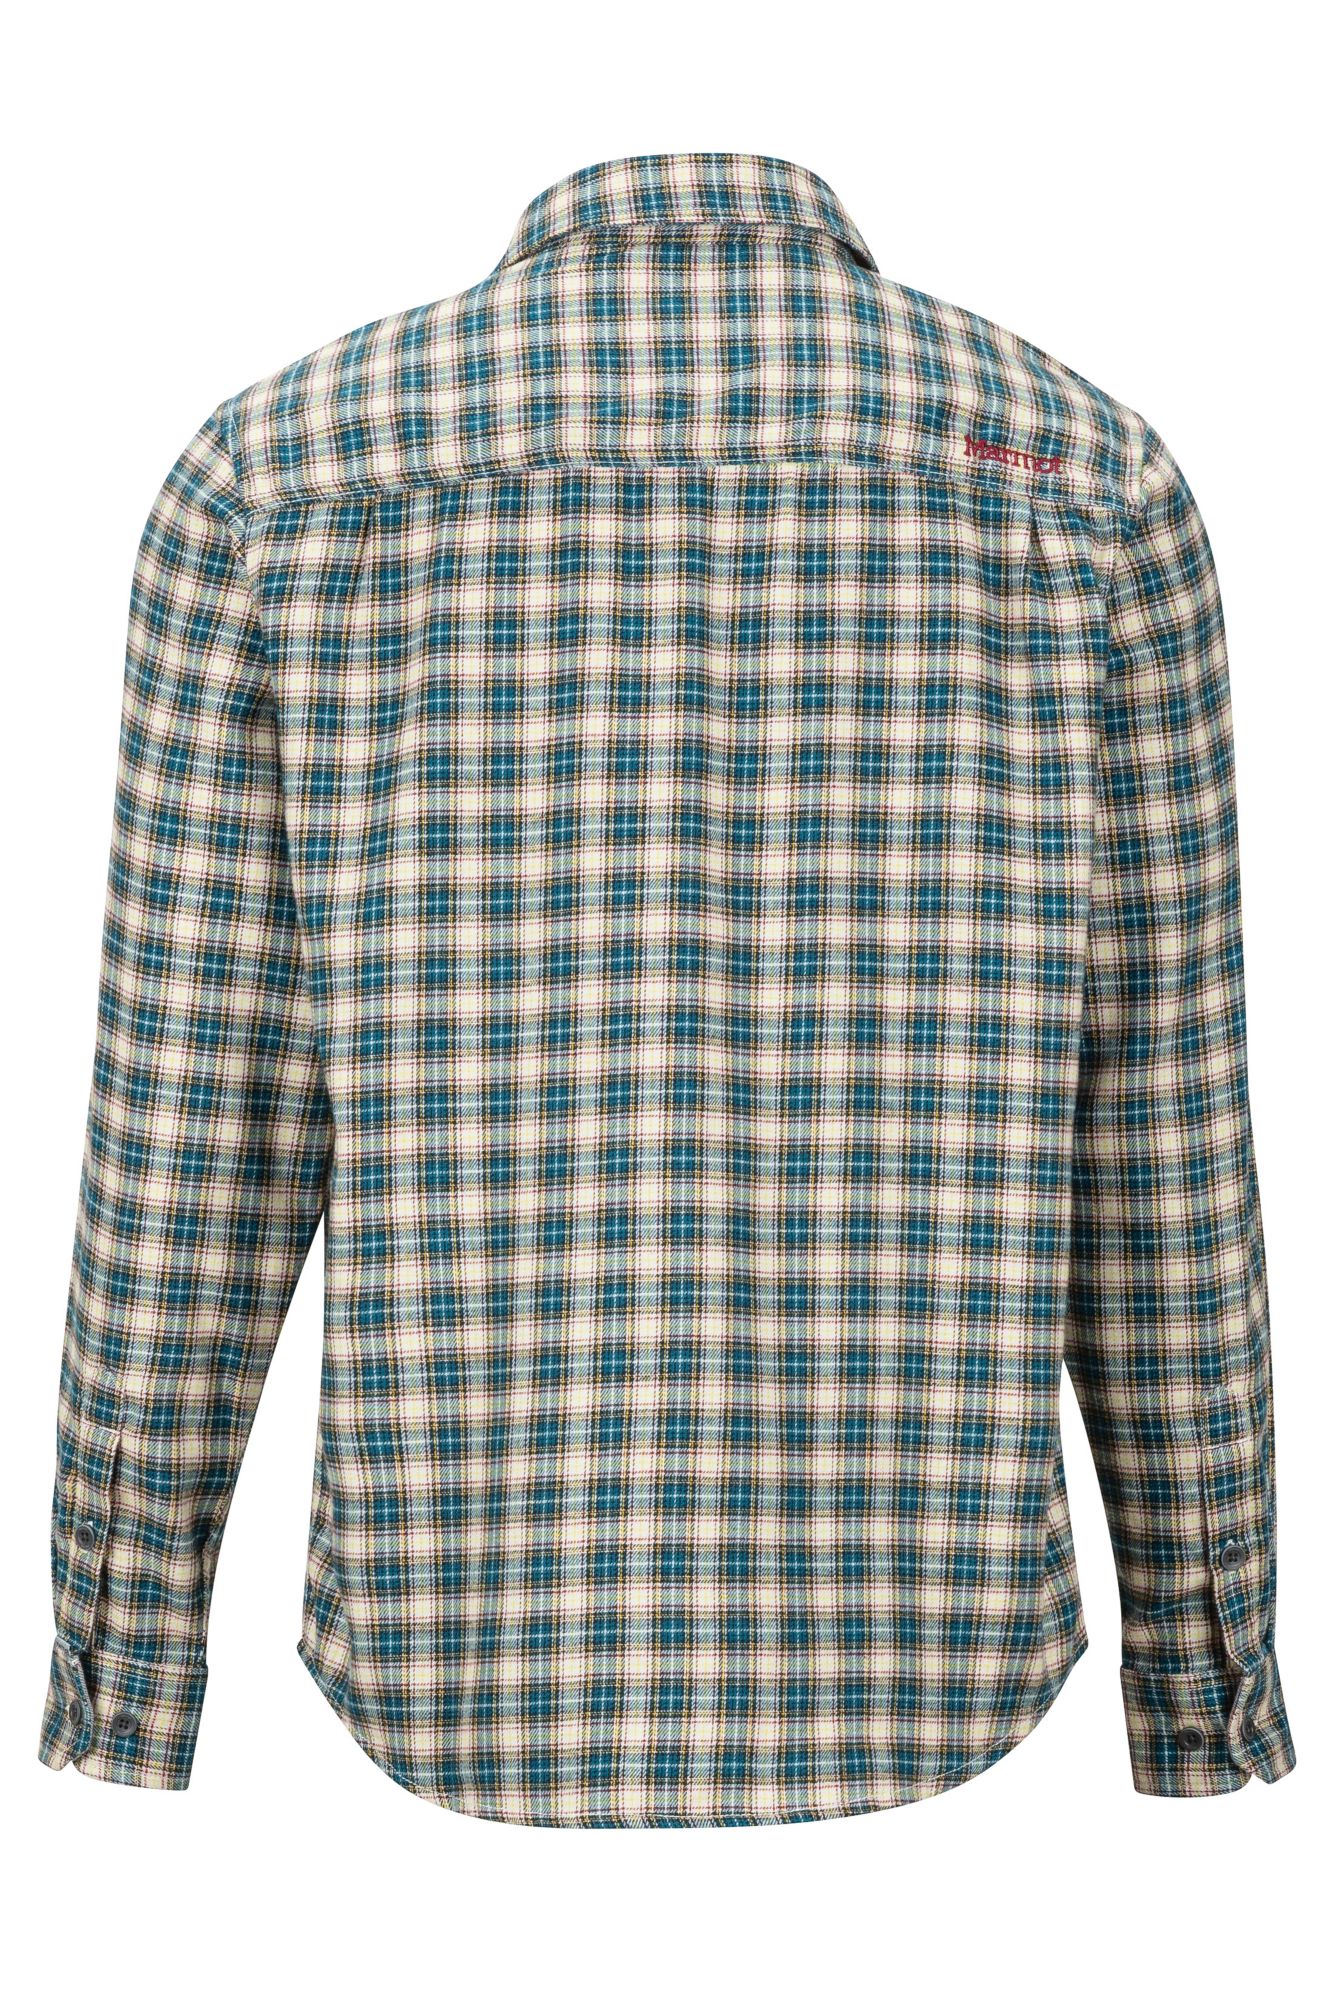 Men's Fairfax Midweight Flannel Long-Sleeve Shirt